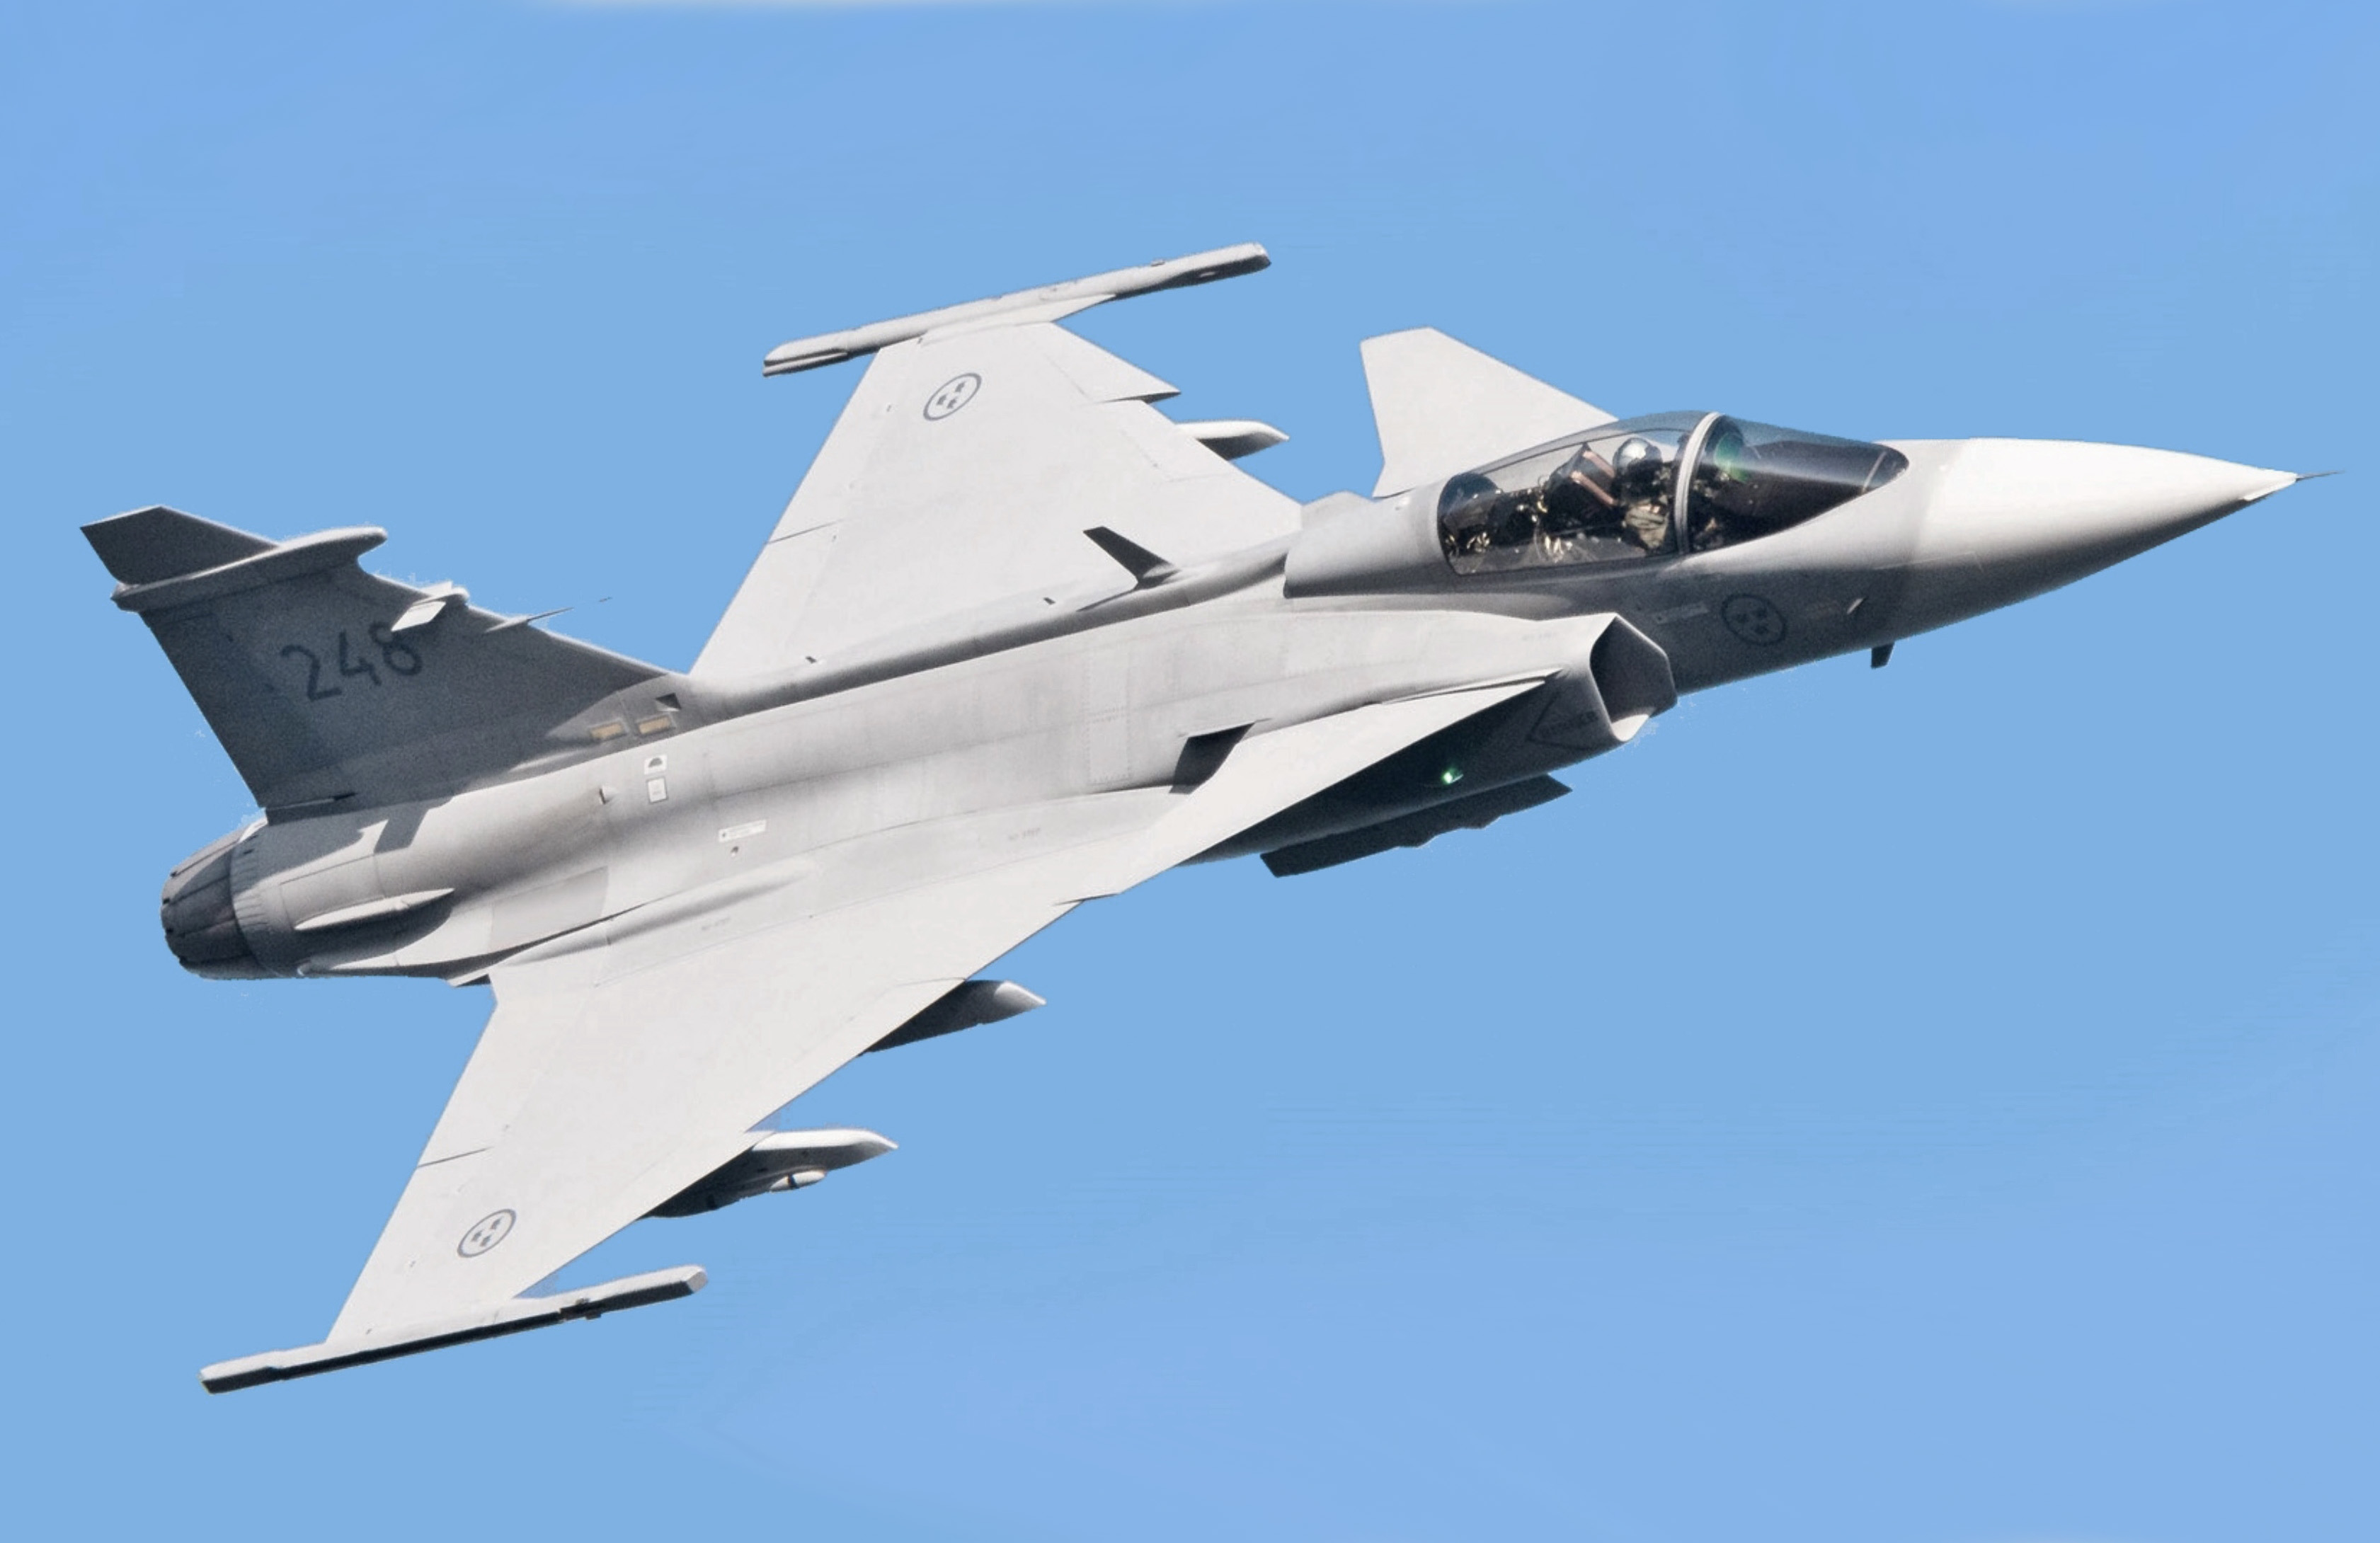 Oekraïense piloten krijgen vertrouwdmakingstraining met Zweedse JAS 39 Gripen-gevechtsvliegtuigen